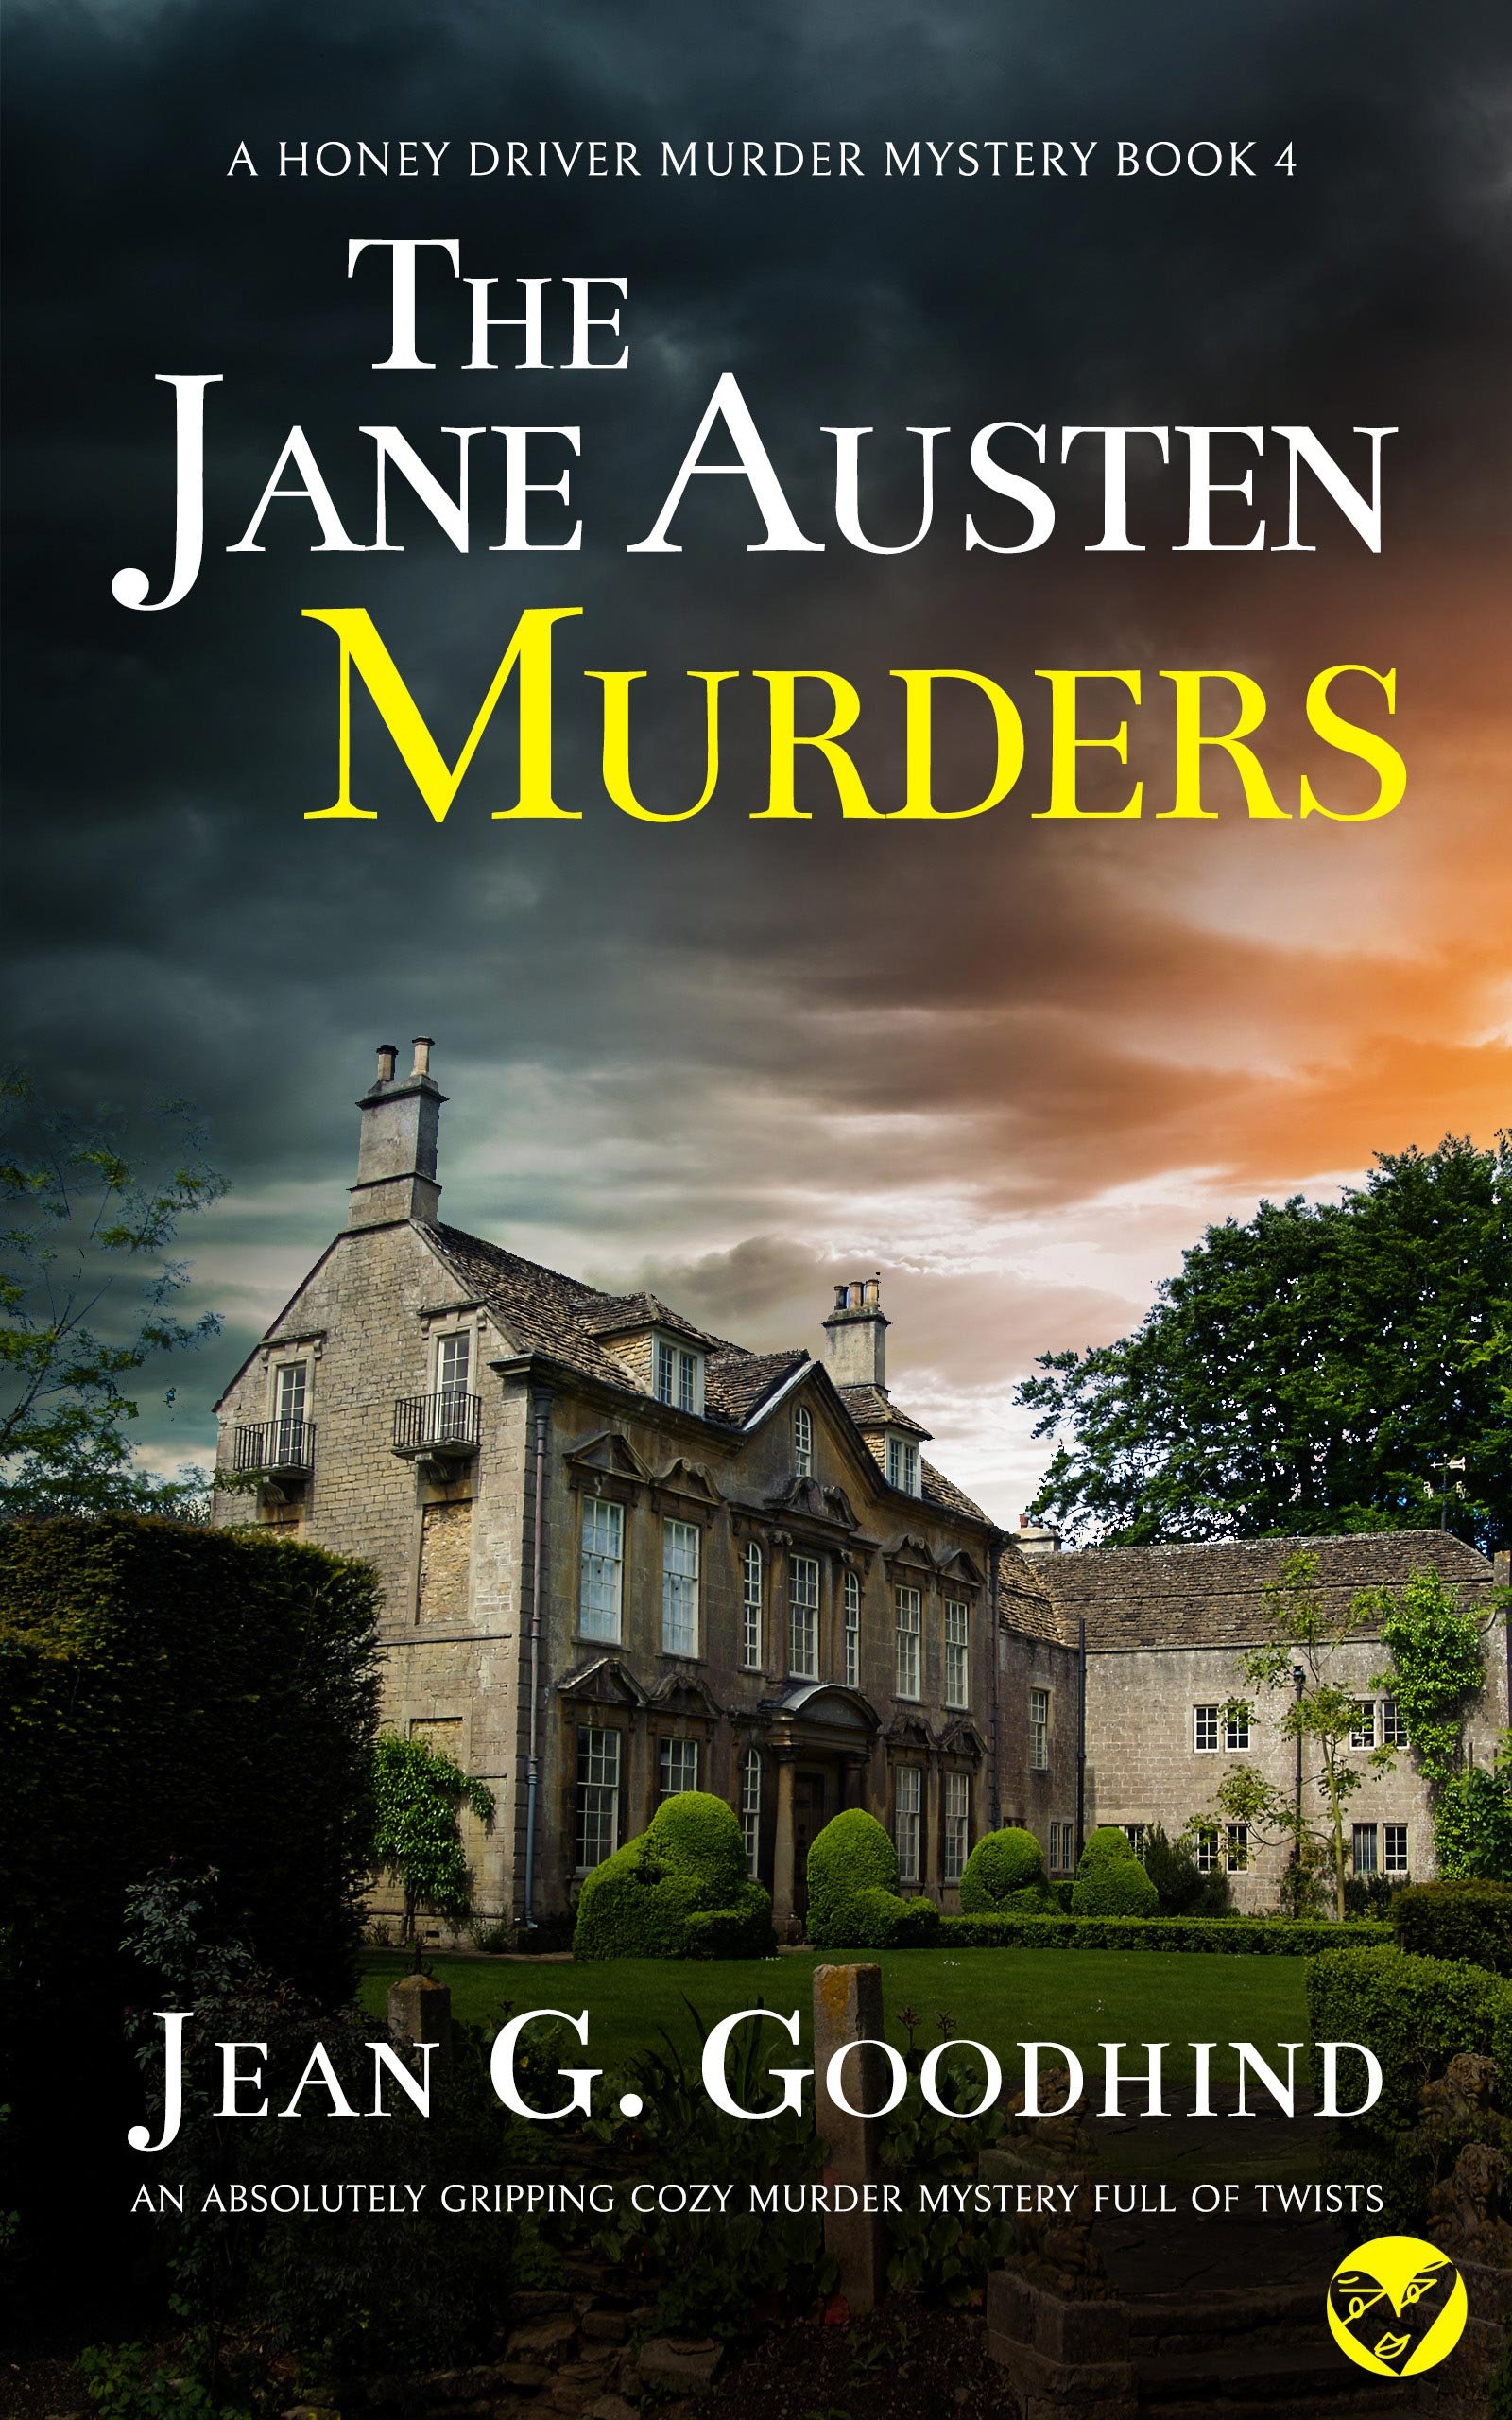 THE JANE AUSTEN MURDERS publish cover 613KB.jpg